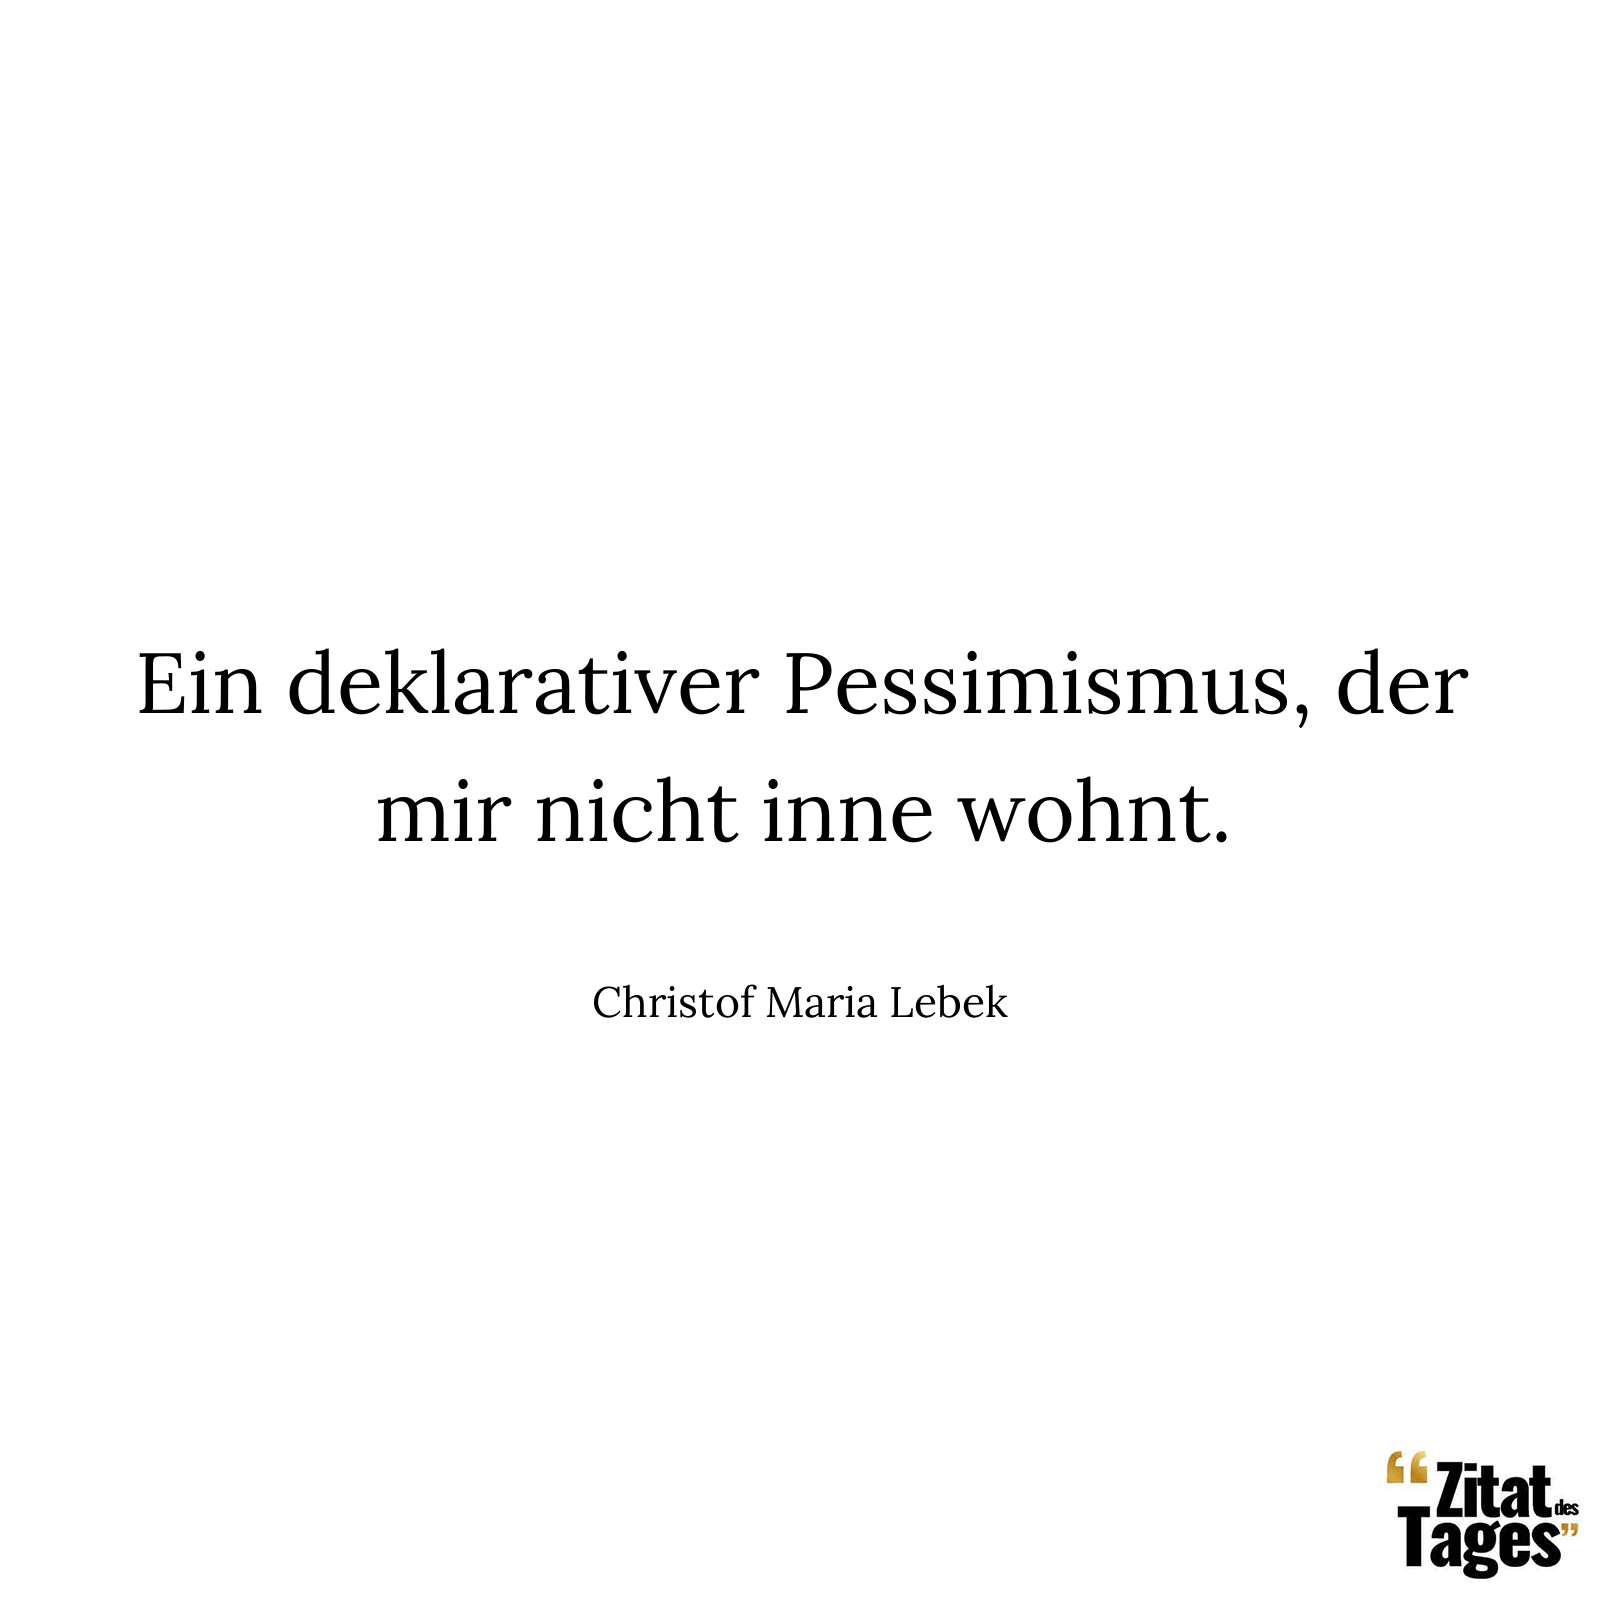 Ein deklarativer Pessimismus, der mir nicht inne wohnt. - Christof Maria Lebek